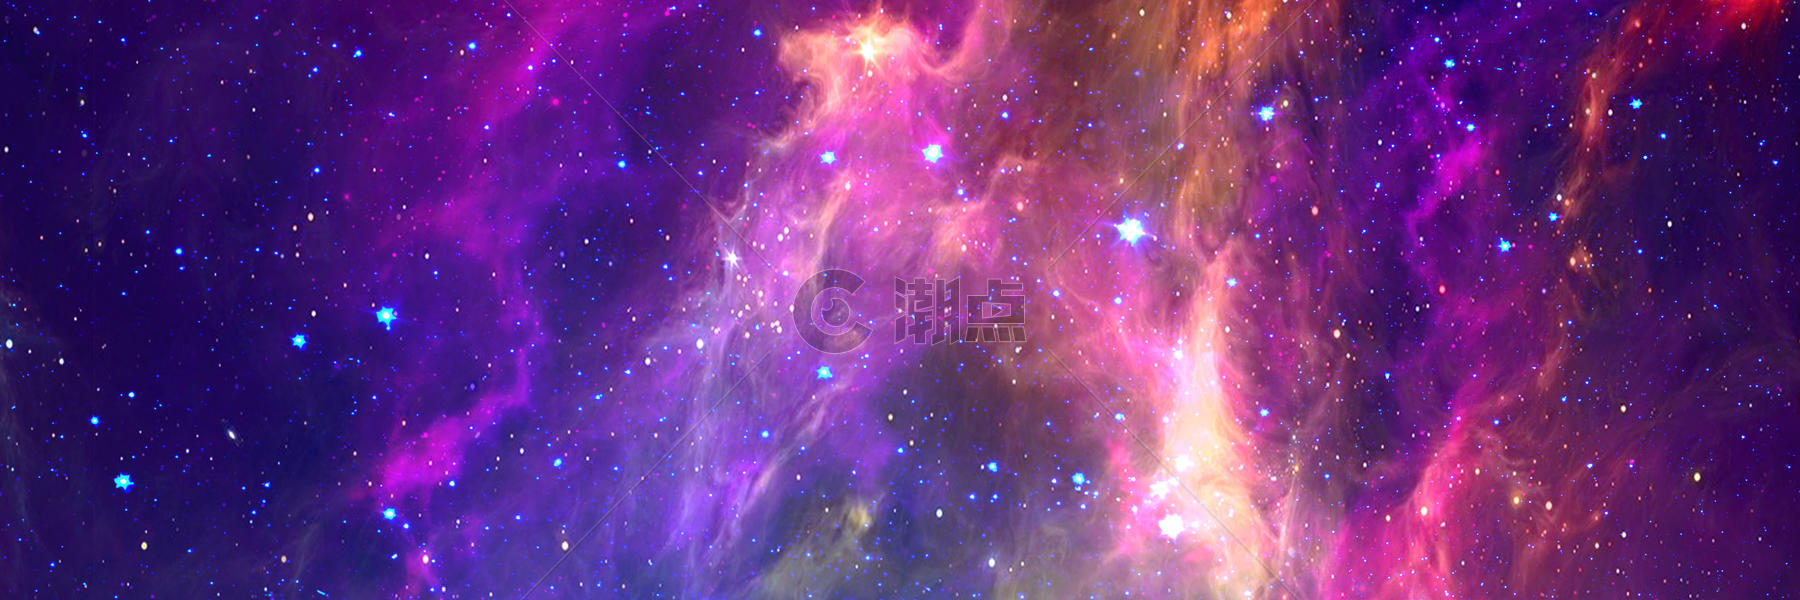 紫色璀璨星空banner图片素材免费下载